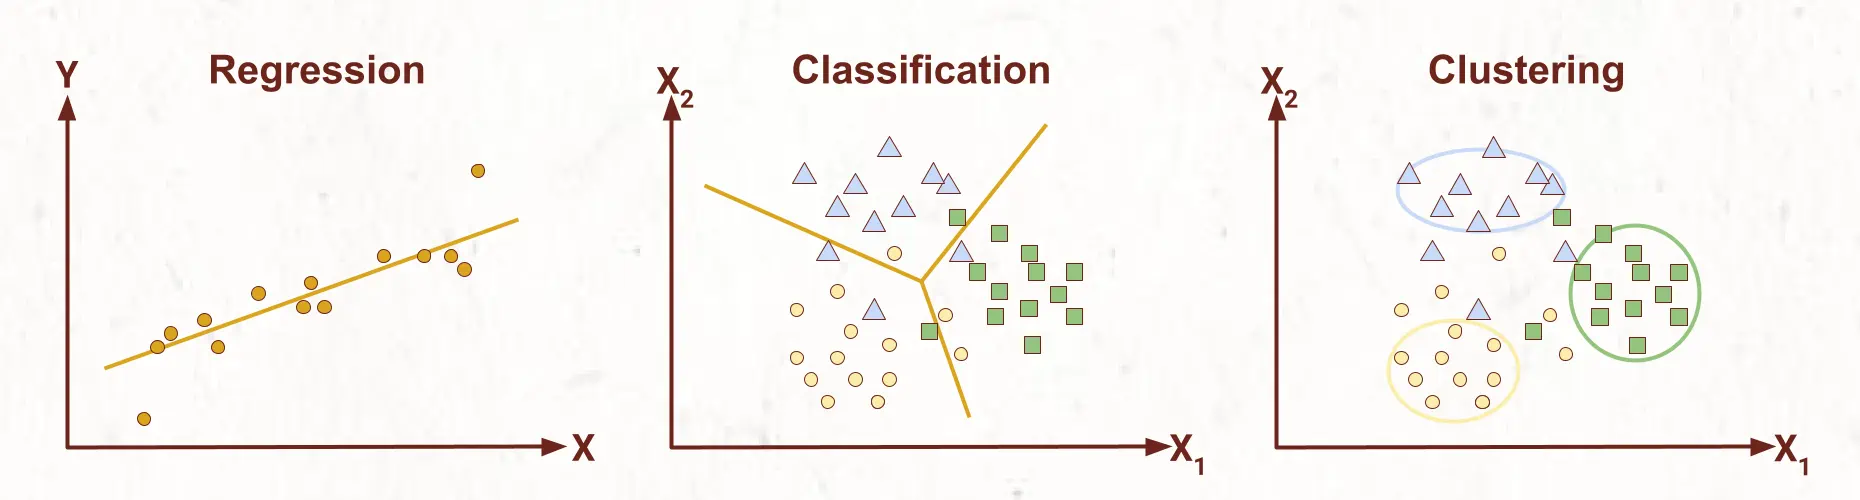 Linear Regression vs. Classification vs. Clustering